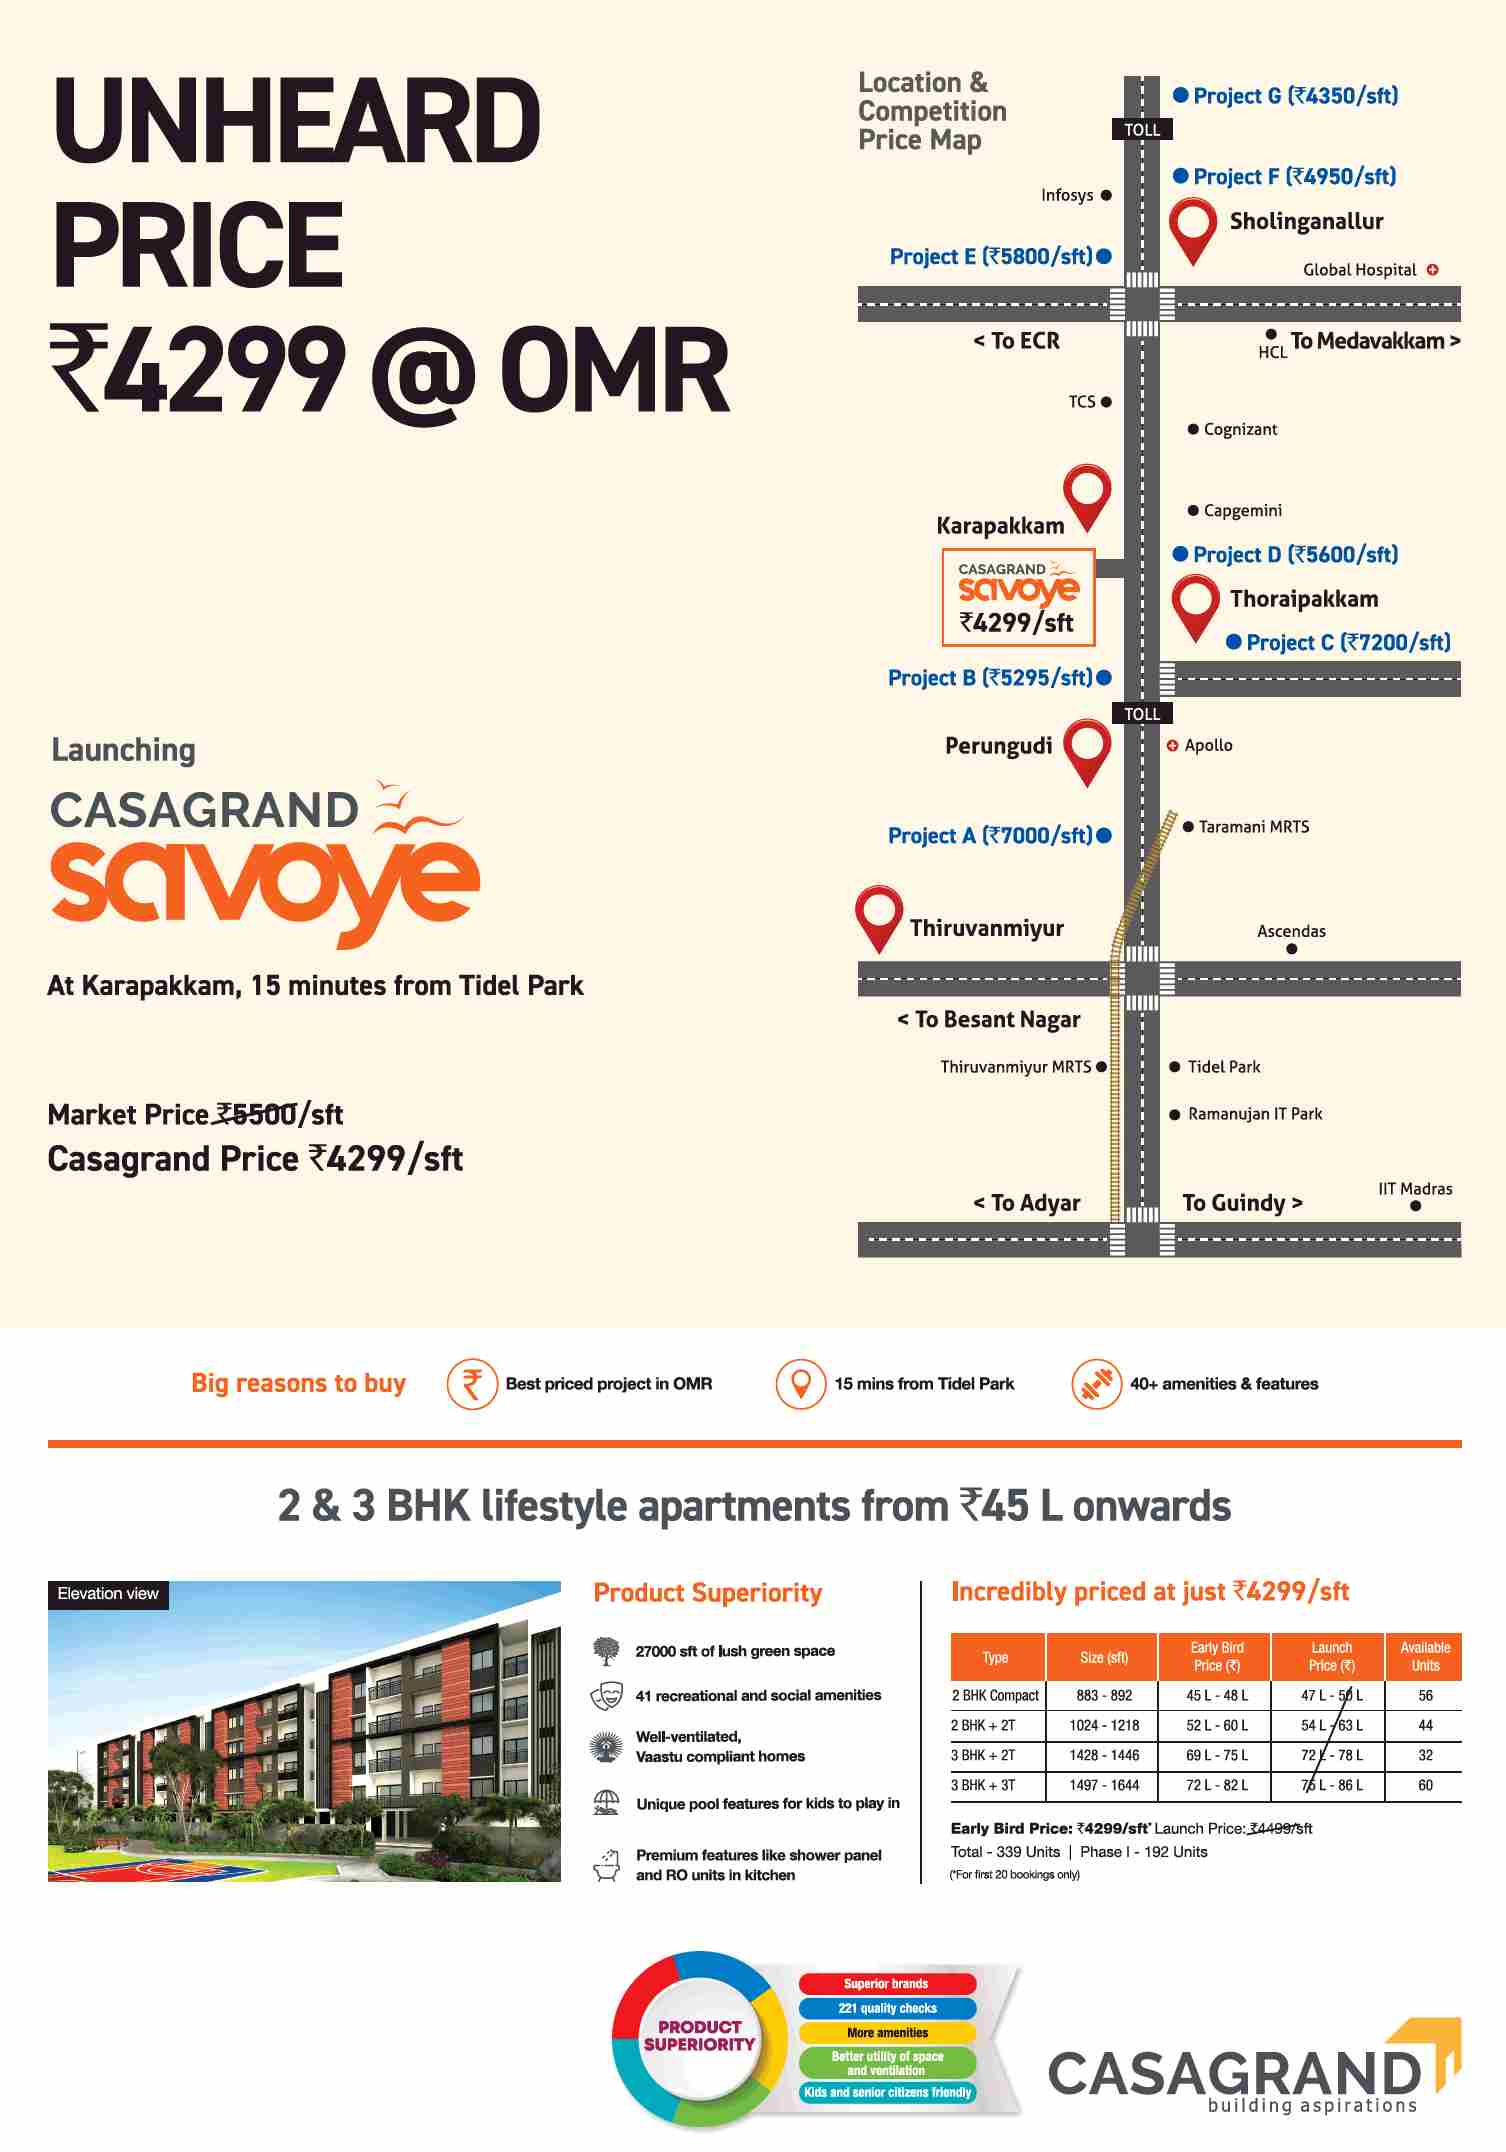 Launching Casagrand Savoye in Chennai Update